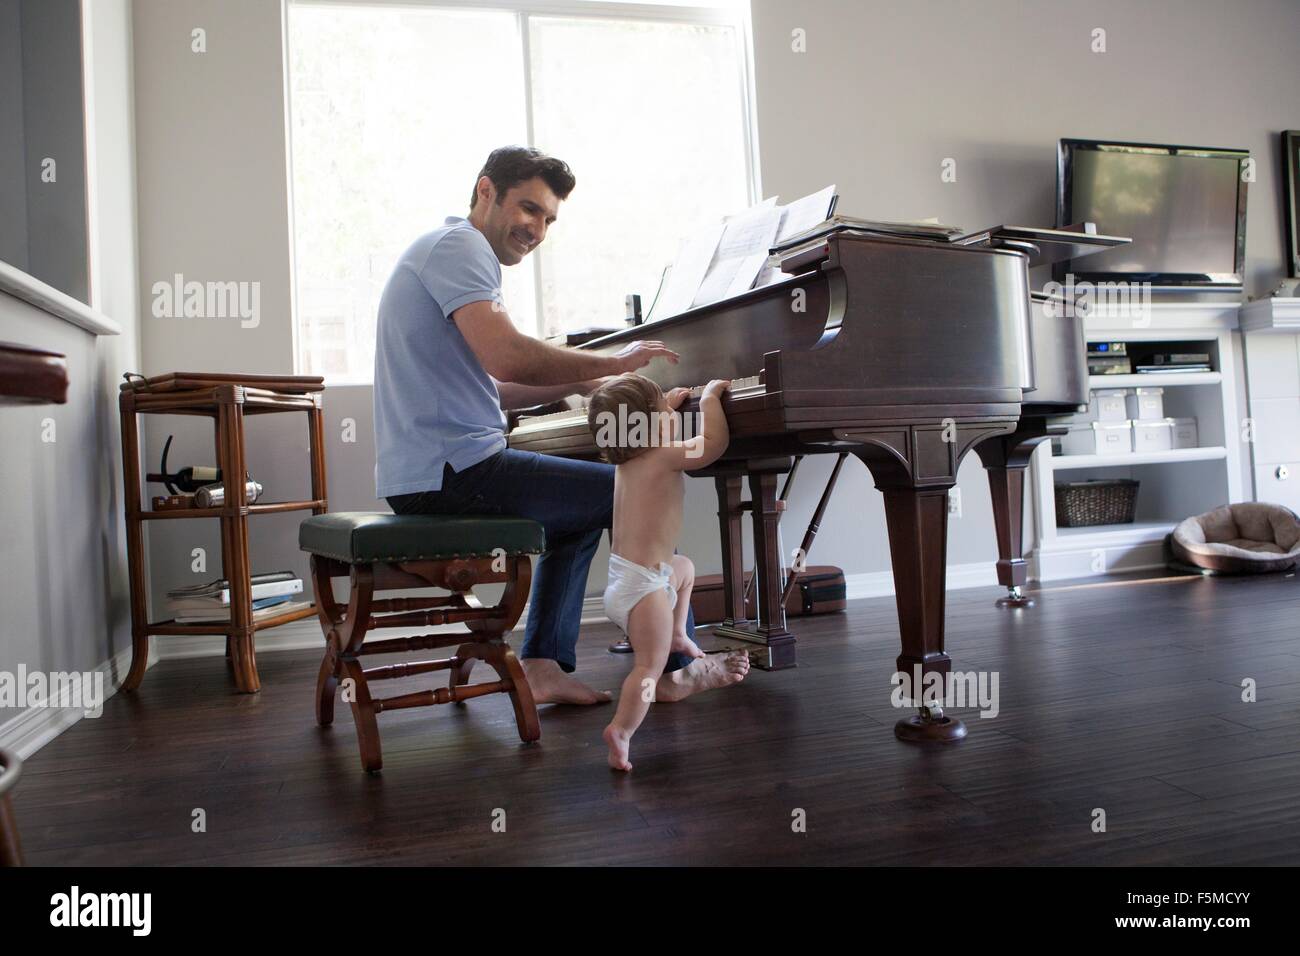 Vater und Baby junge am Klavier spielen Stockfoto